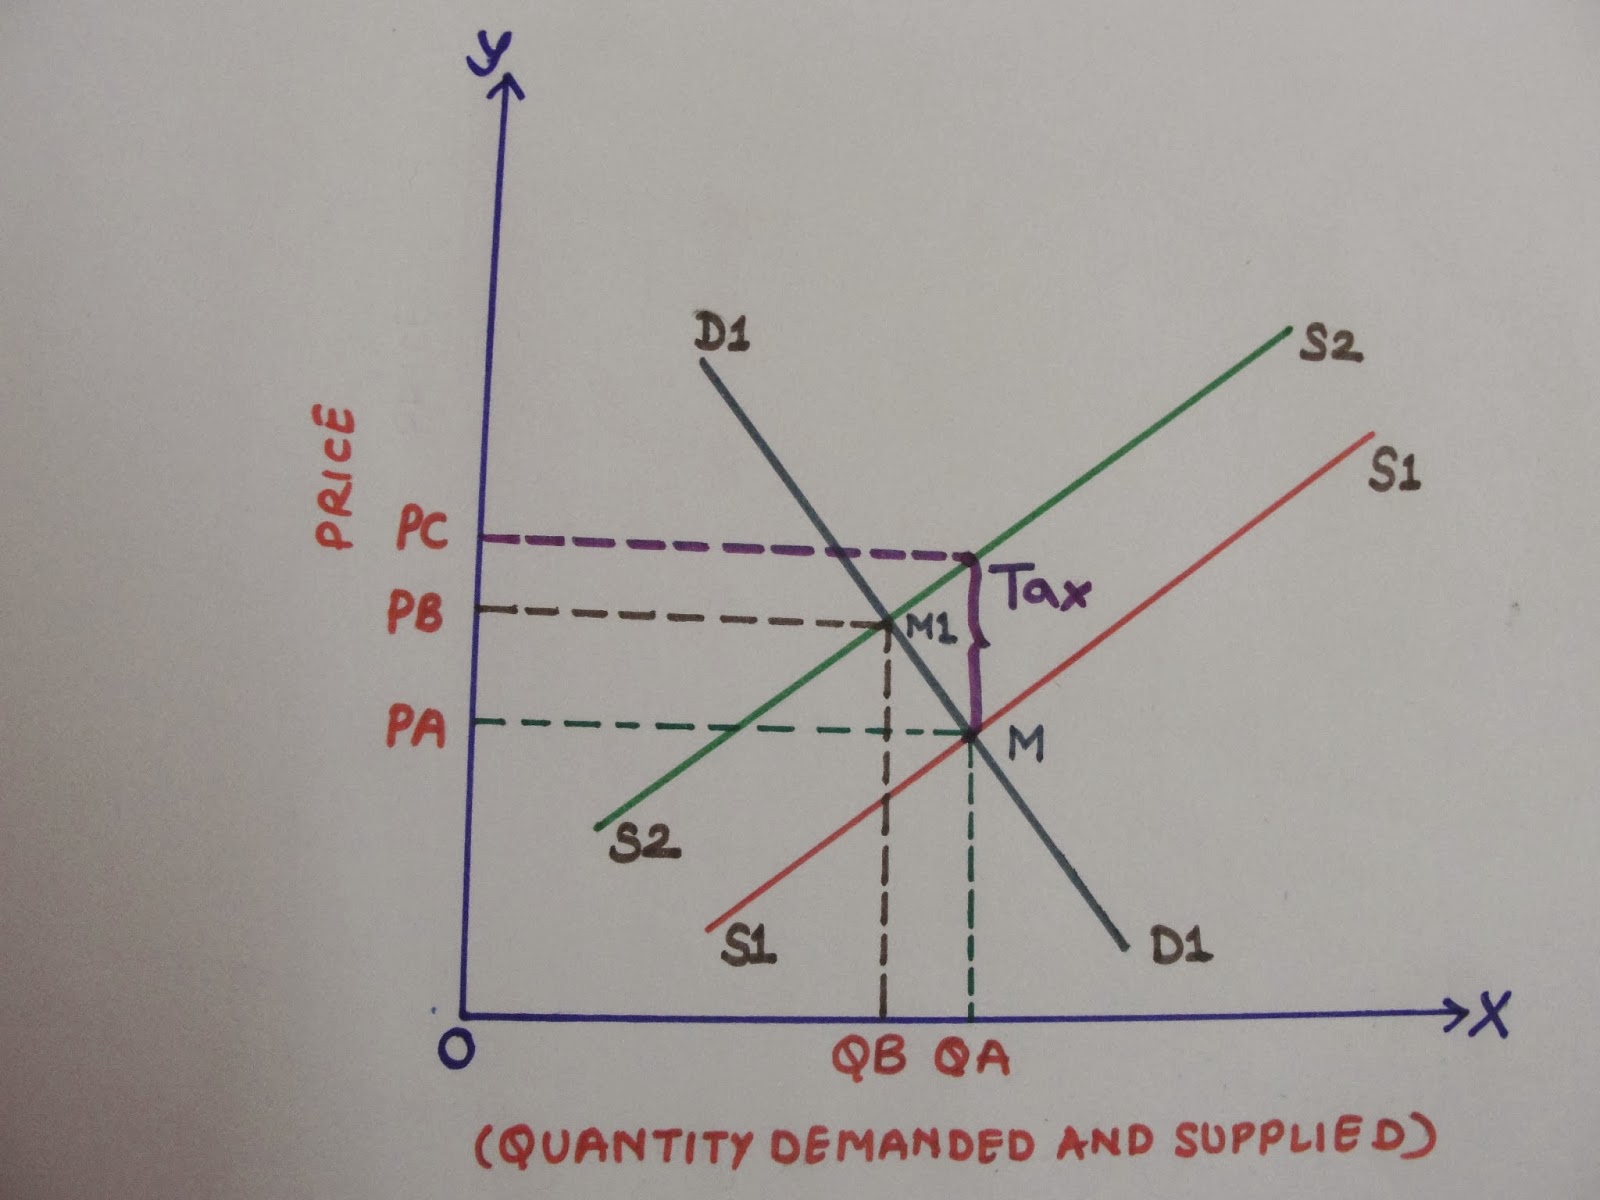 economics-how-does-tax-impact-equilibrium-price-and-equilibrium-quantity